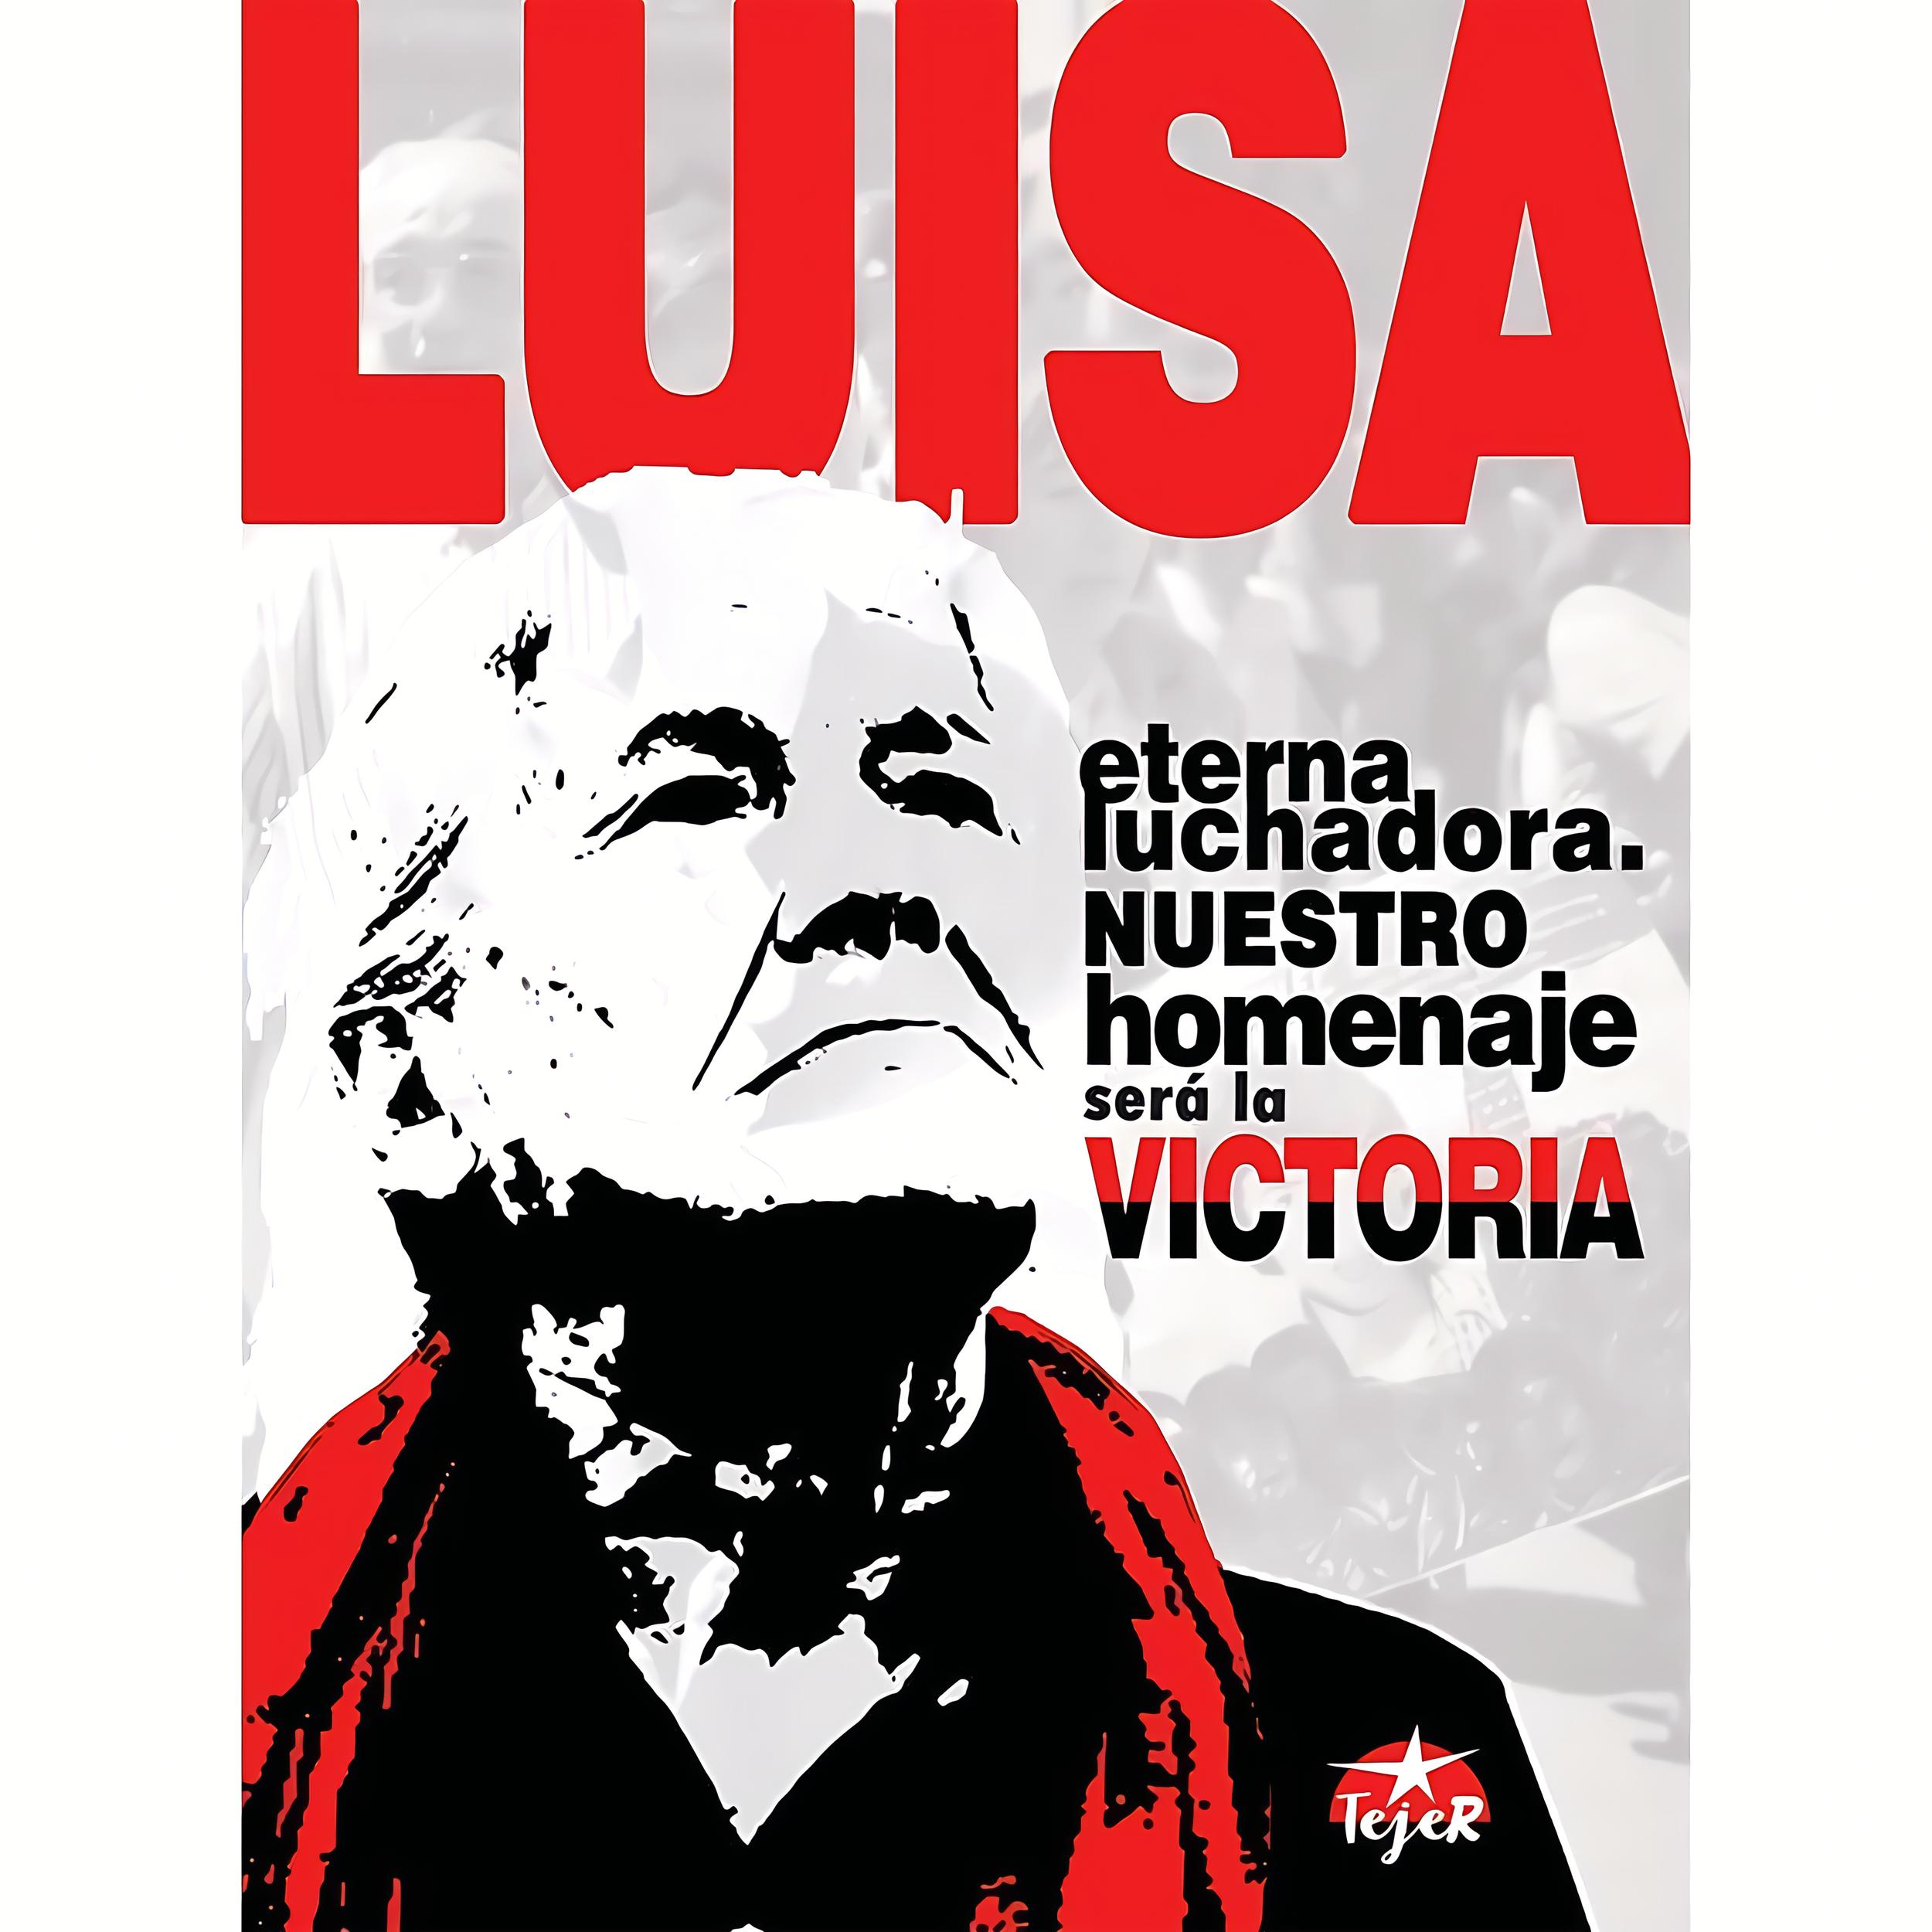 Luisa, eterna luchadora, nuestro homenaje será la victoria